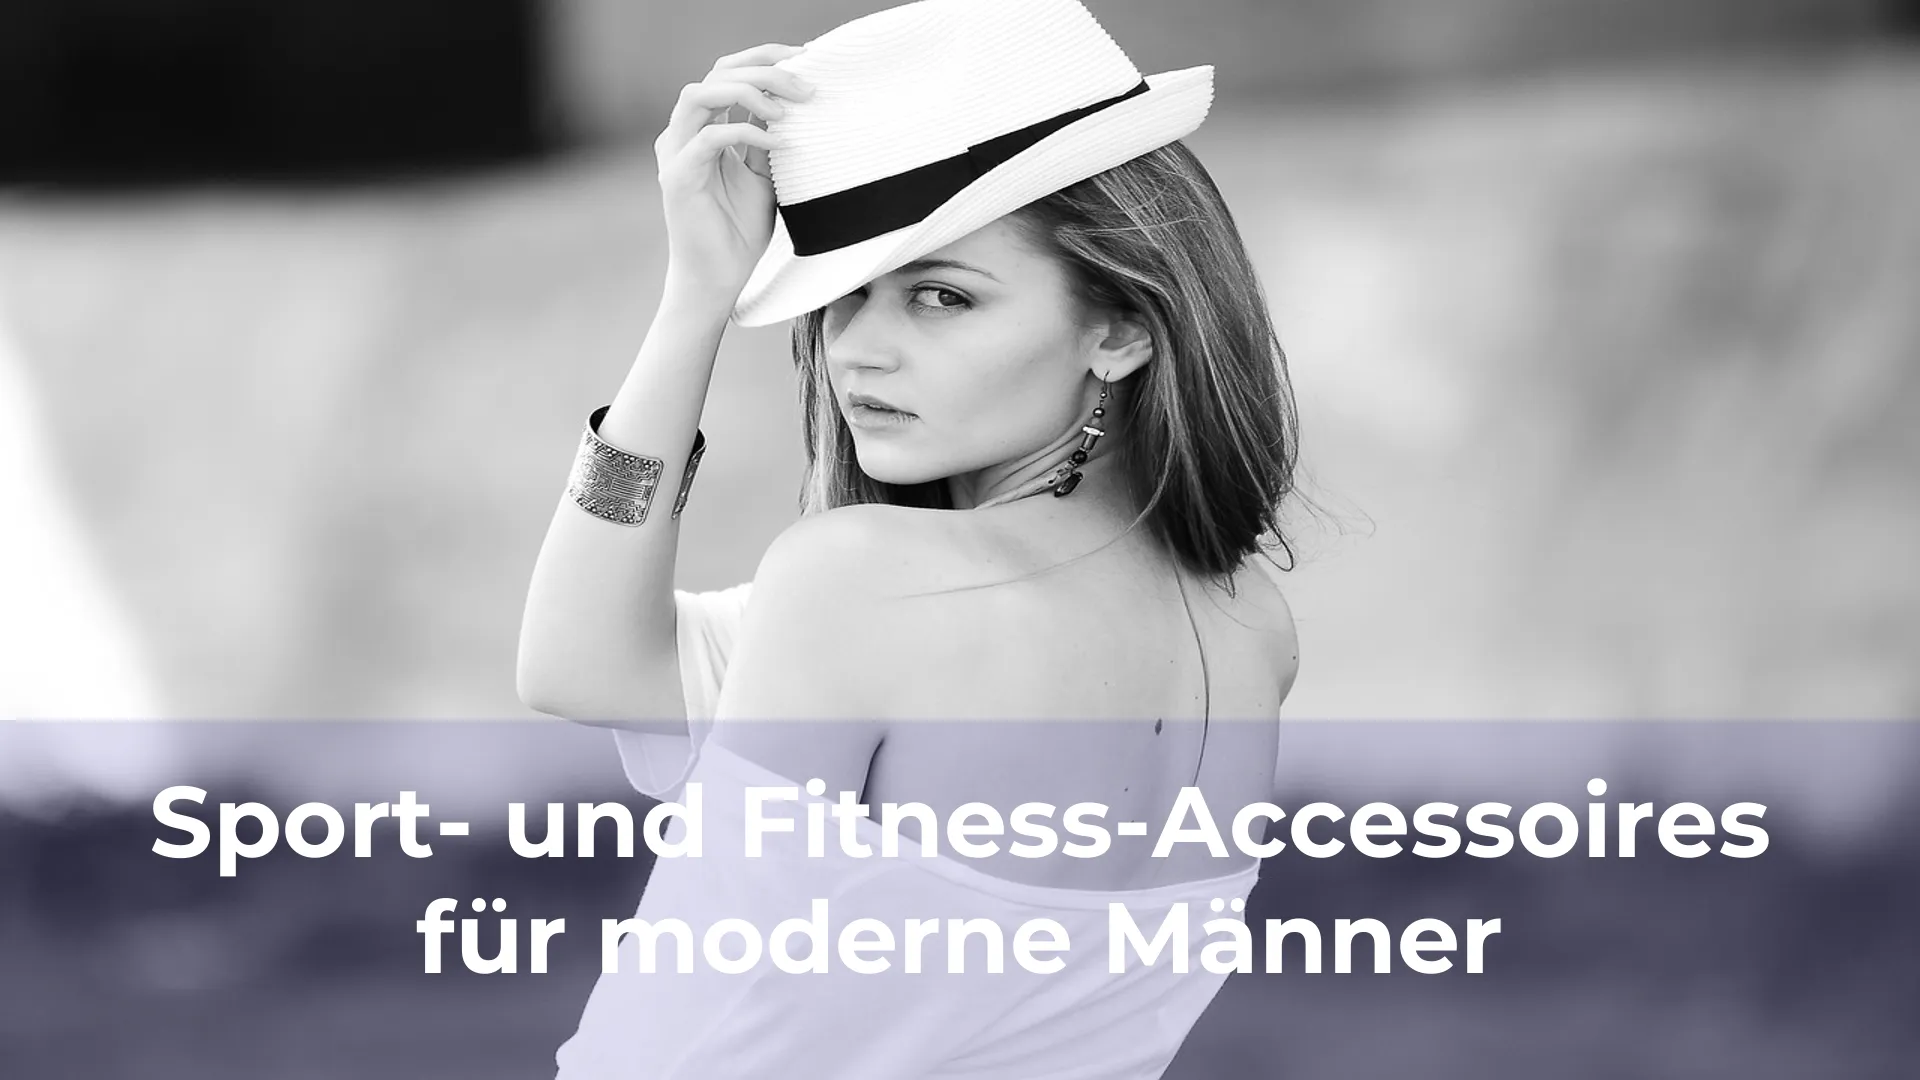 Sport und fitness accessoires für moderne männer